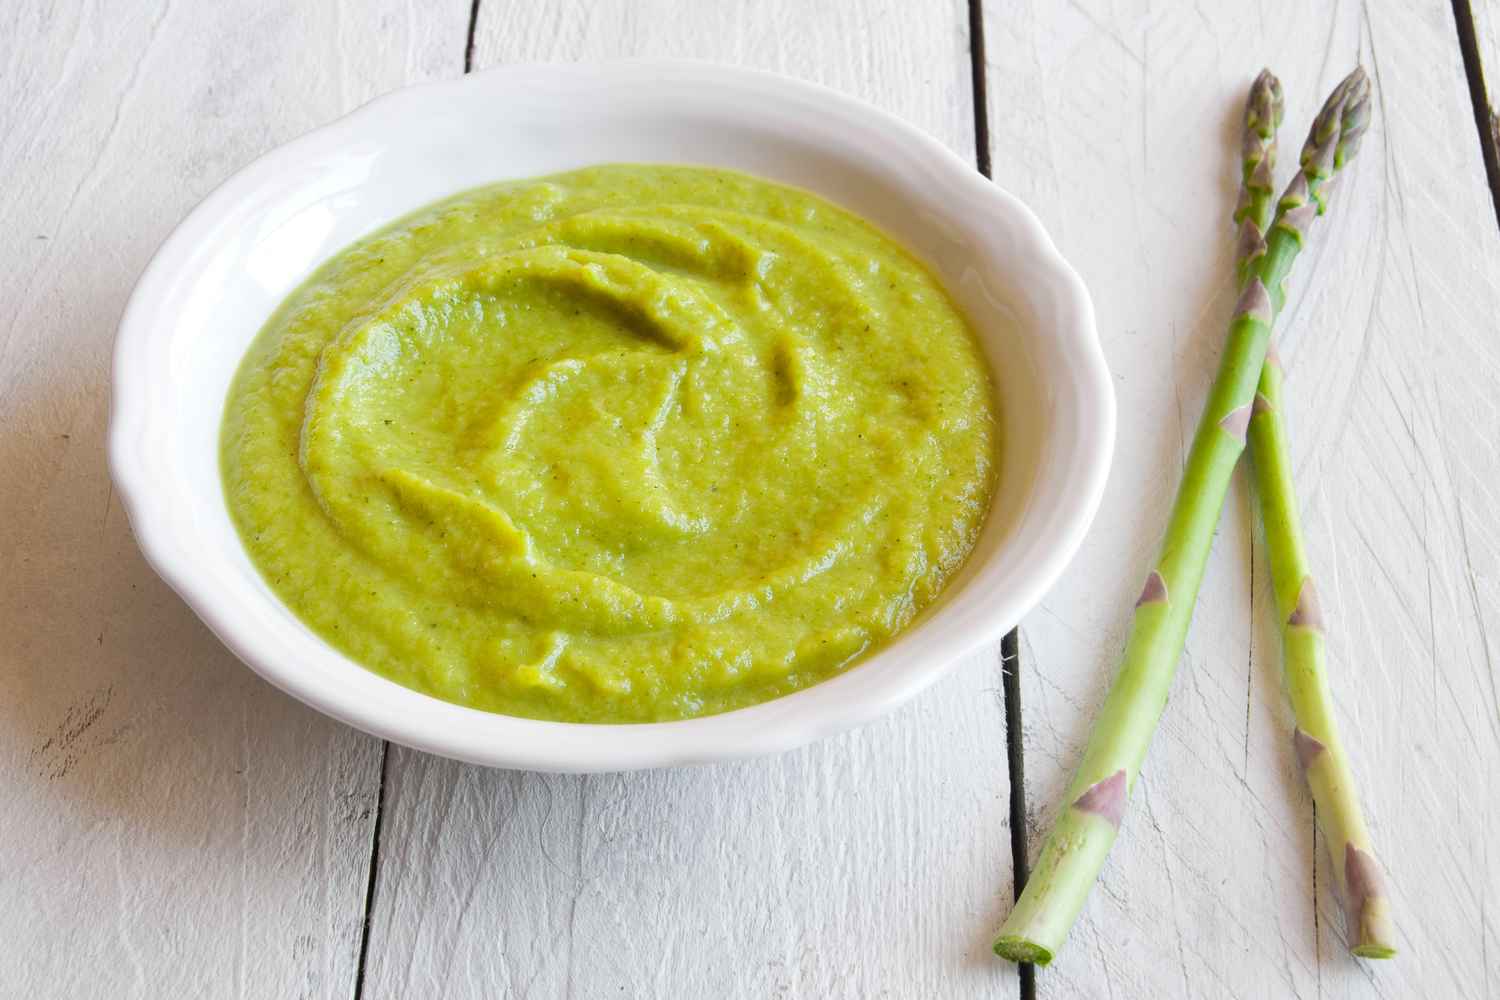 Tasty Asparagus Recipes For Babies